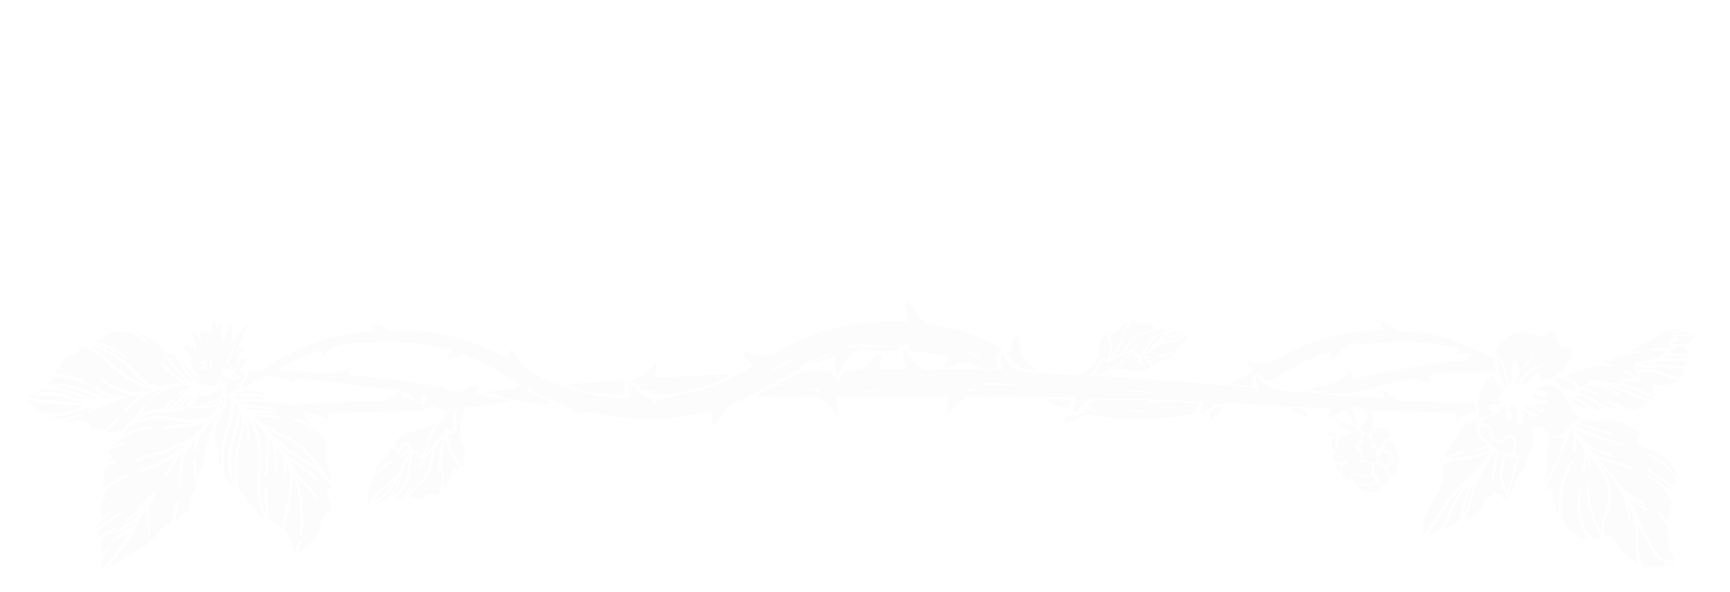 Bramble: The King Mountain